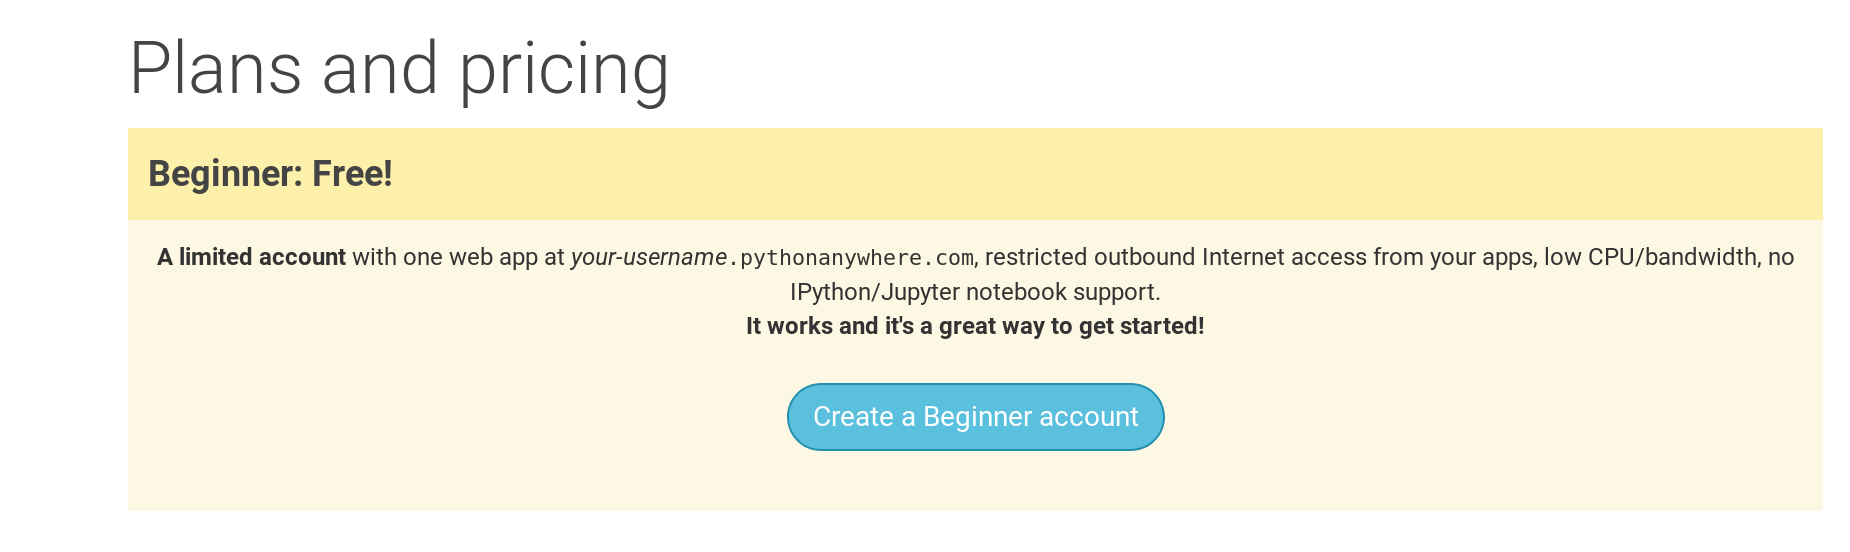 Página do PythonAnywhere mostrando o botão para criar a conta "Beginner" (iniciante)